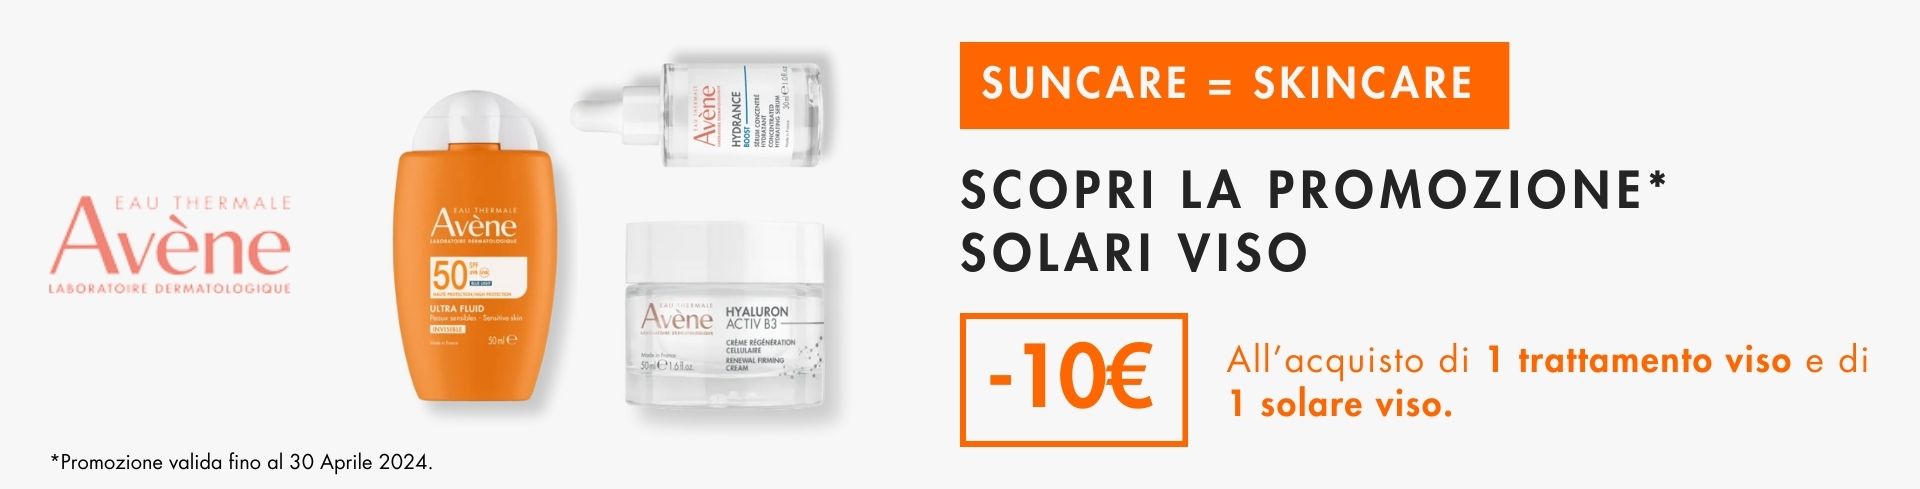 Approfitta della promo Avene! Acquista 1 solare viso + un trattamento viso e ricevi -10€ di sconto!  desktop